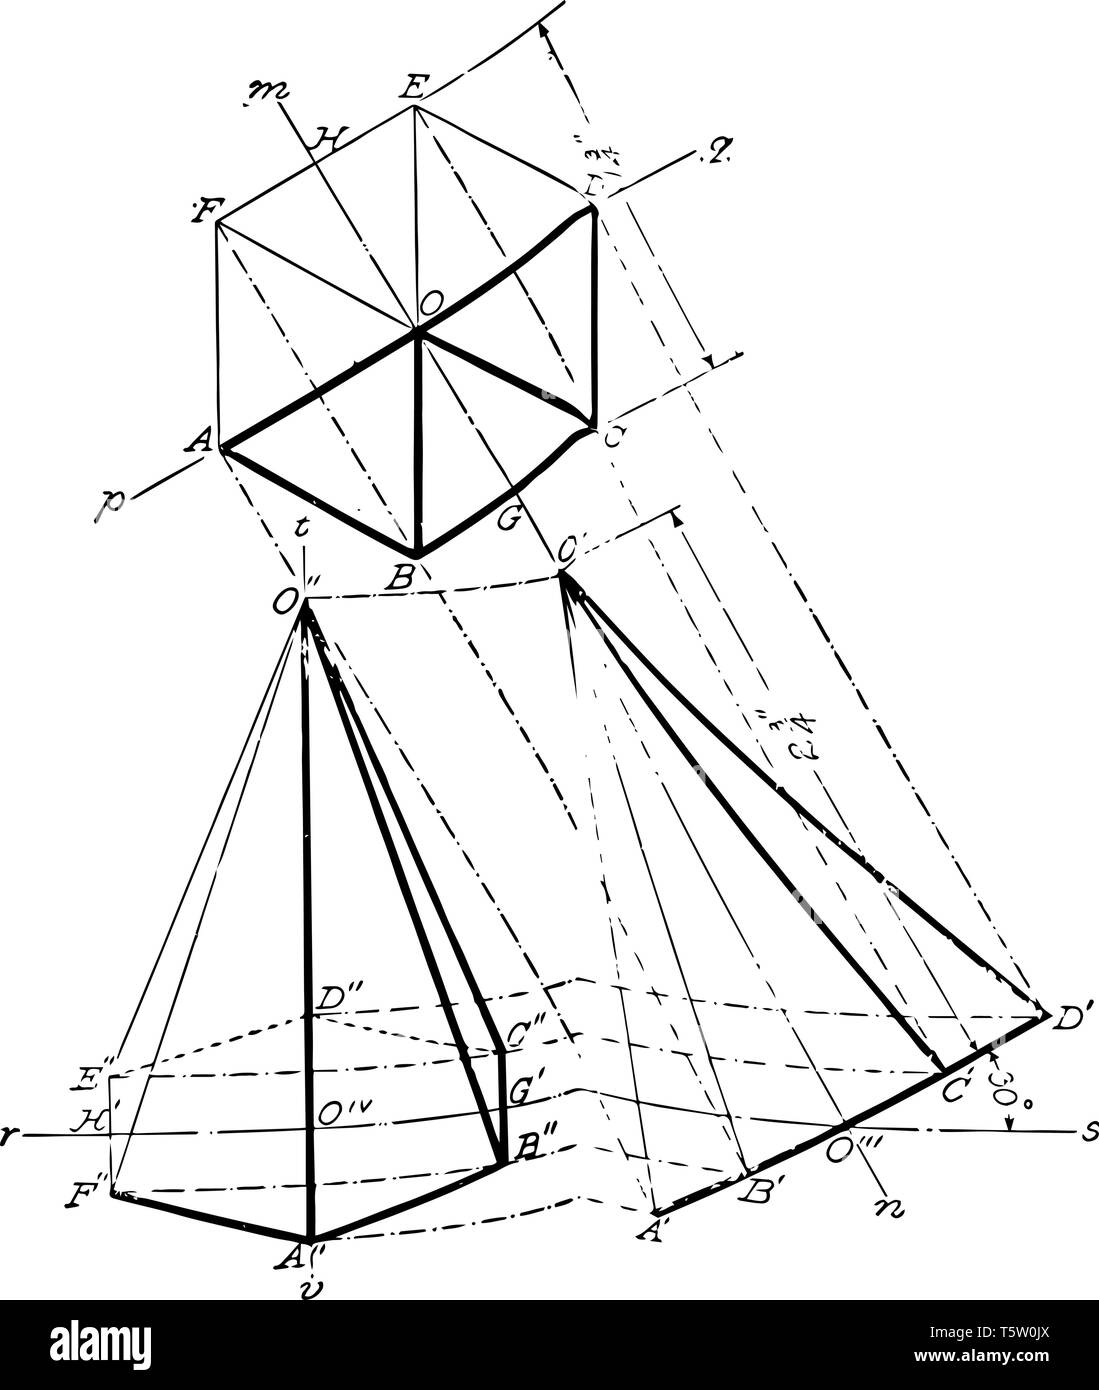 L'image montre un prisme hexagonal sous différents angles dont l'axe est parallèle au plan de l'étude et dont la base forme un angle de 30 avec le Illustration de Vecteur